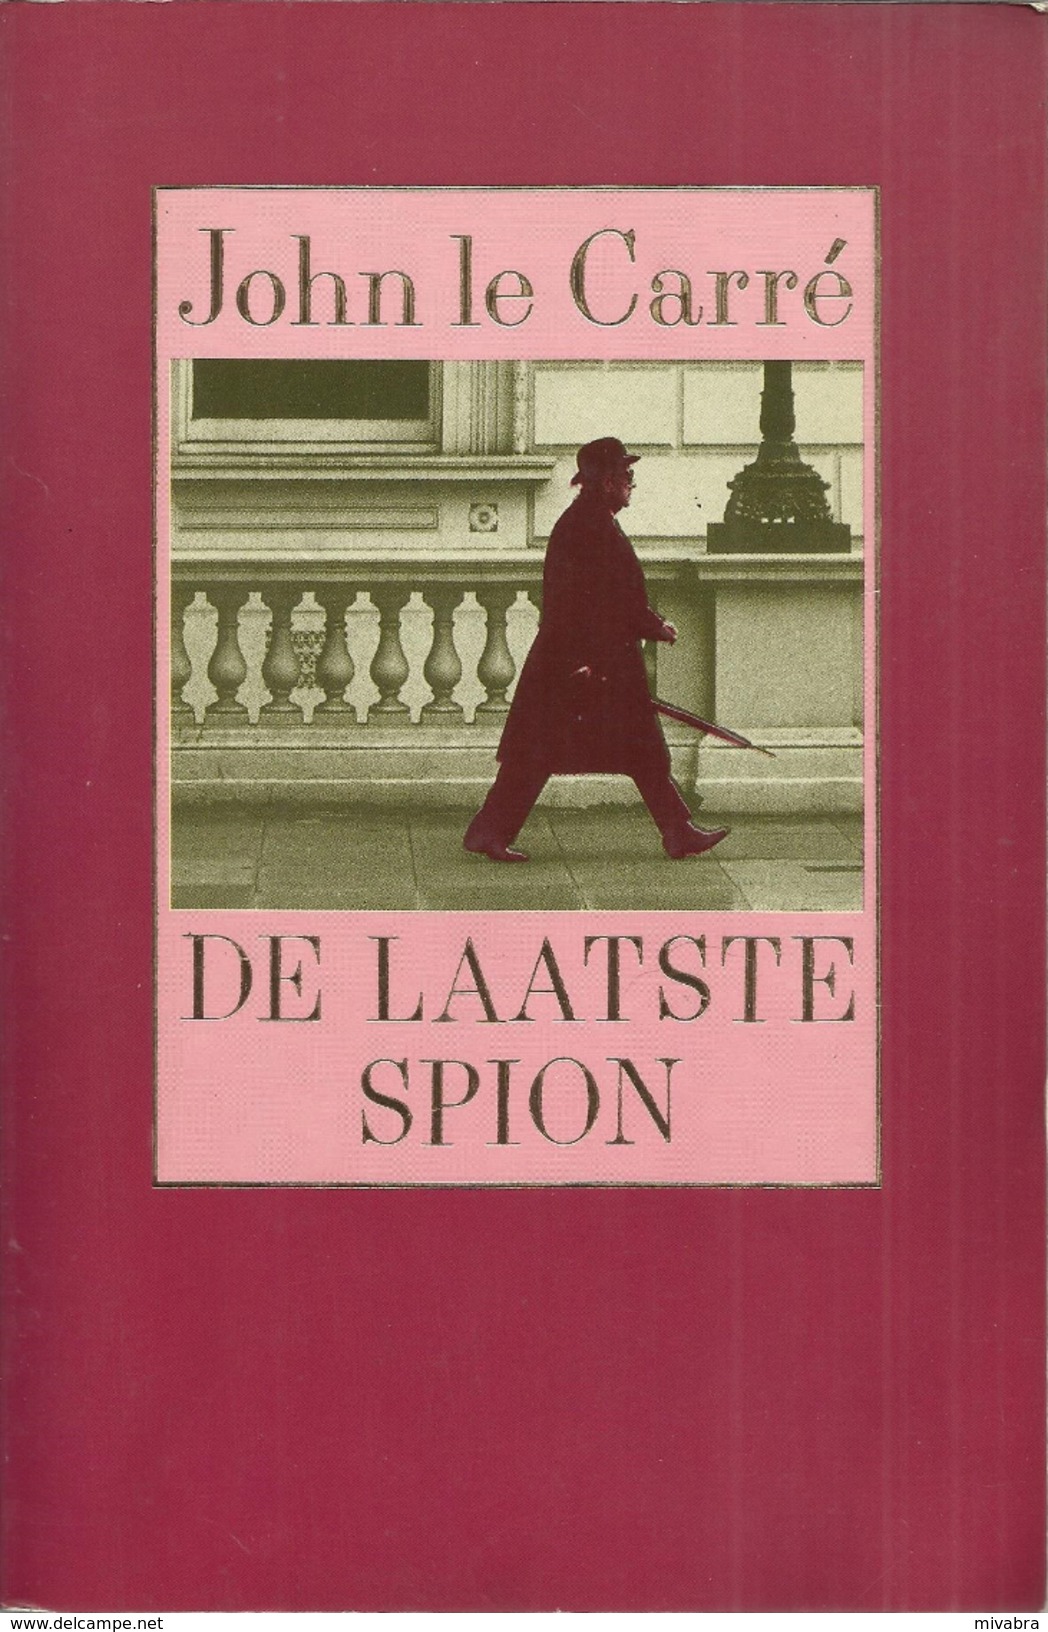 DE LAATSTE SPION - JOHN LE CARRÉ - LUITINGH - SIJTHOFF 1991 - Detectives & Espionaje